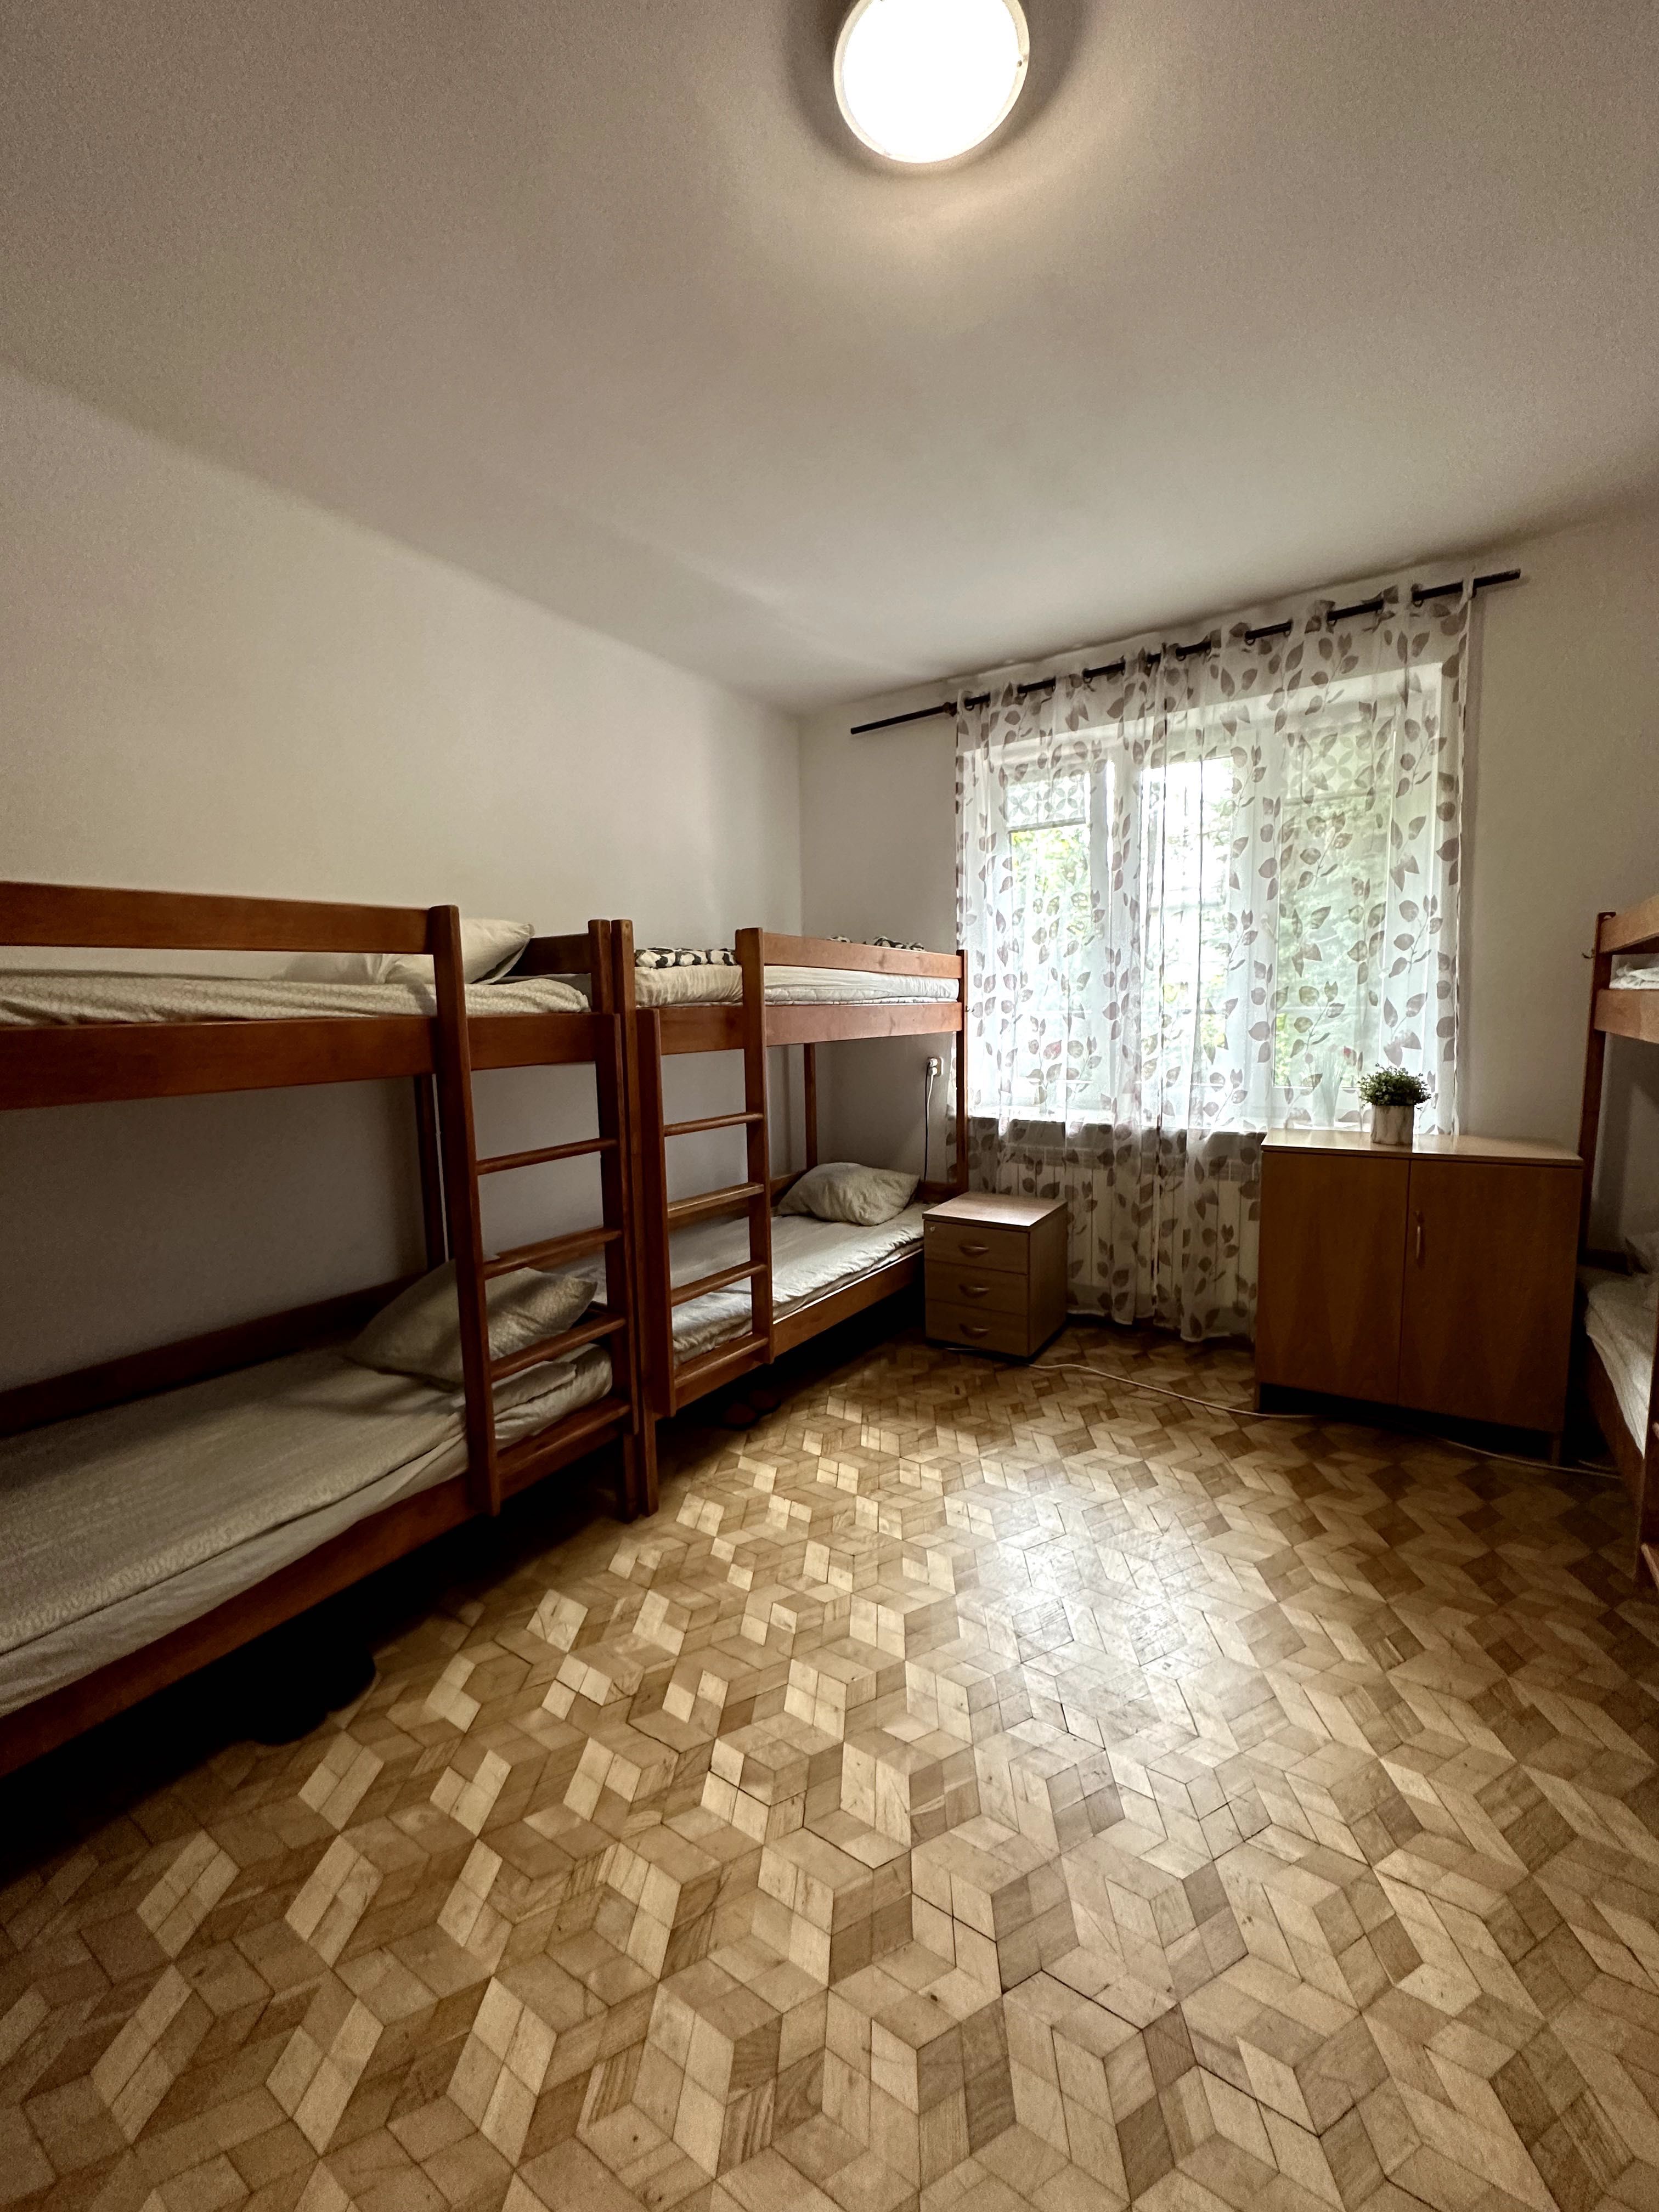 Хостел в Варшаве ul. Promienista, комфорт, комнаты от 4 до 8 человек